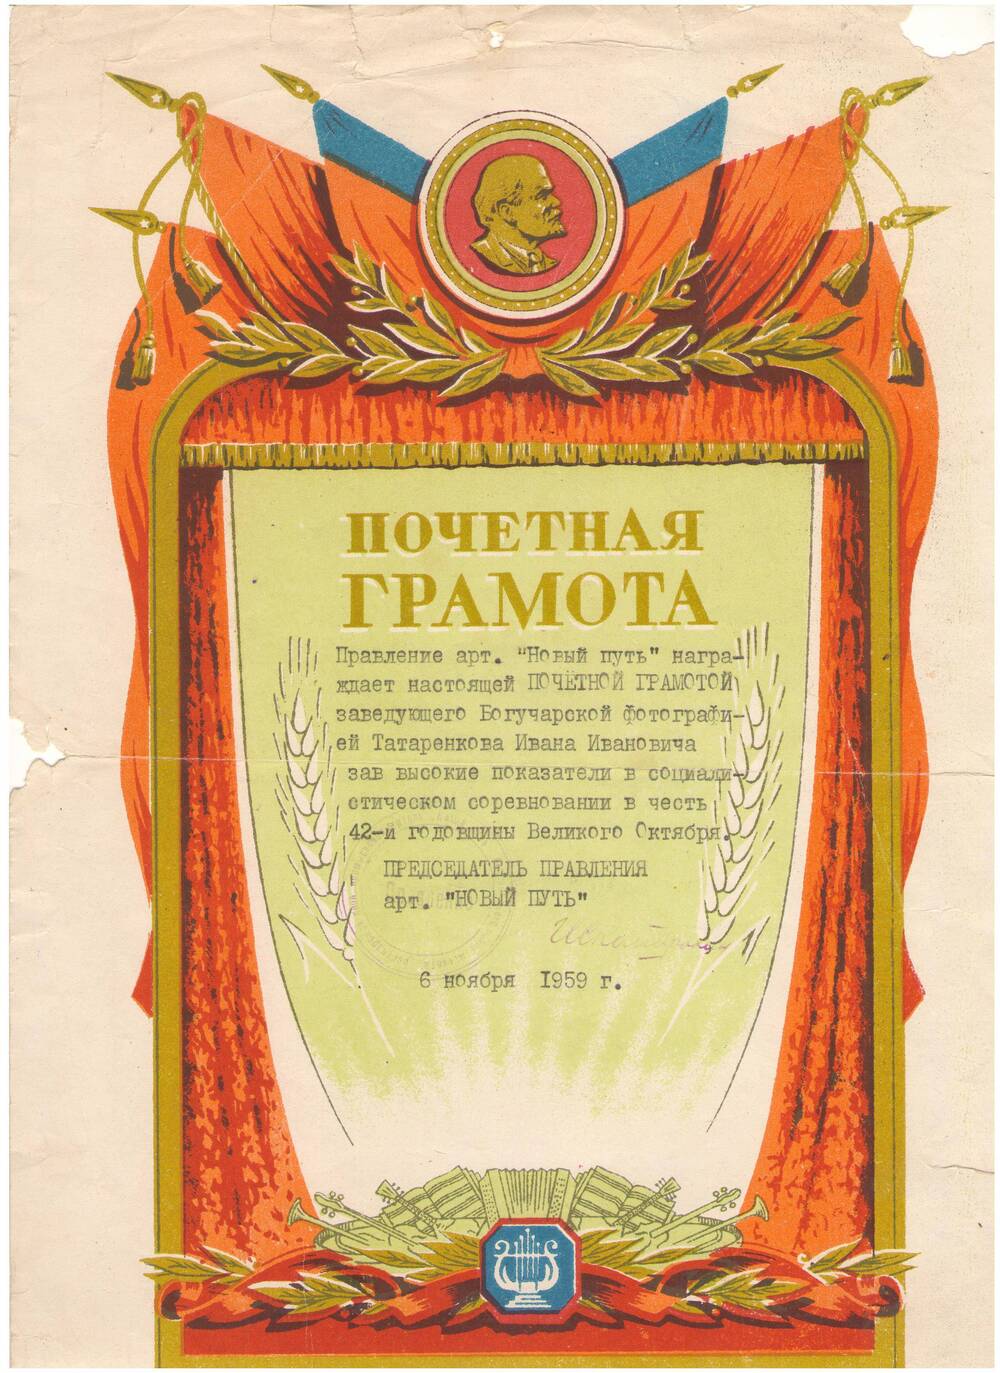 Почетная грамота на имя Татаренкова И.И. от 6 ноября 1959 г.